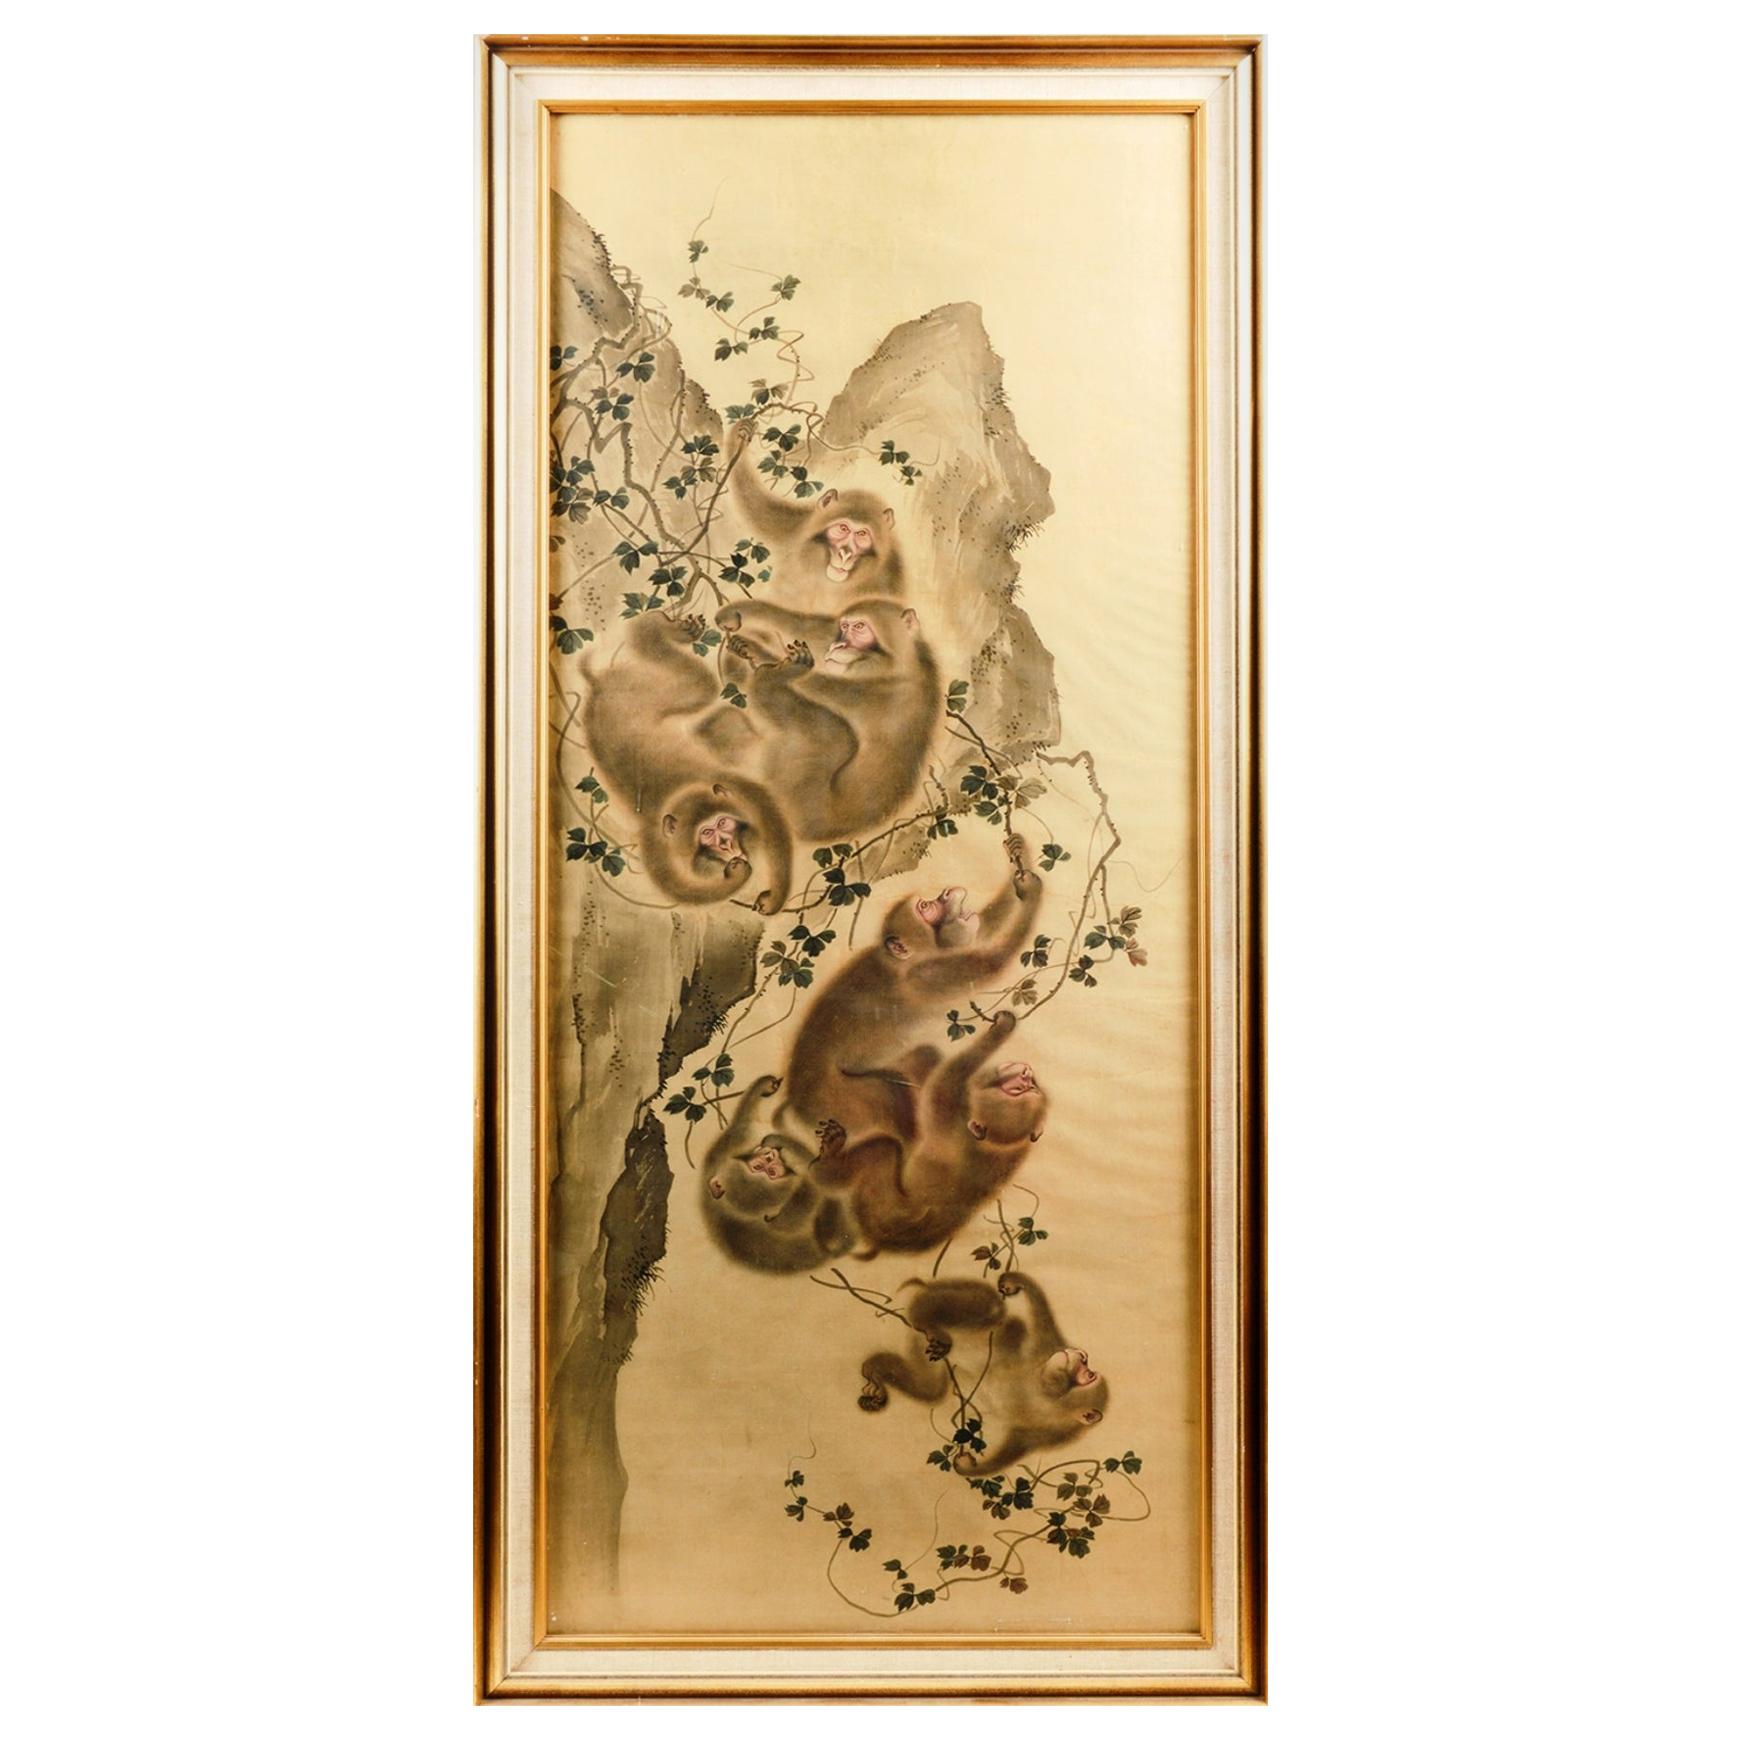 Belle aquarelle de singes de la période Meiji sur soie